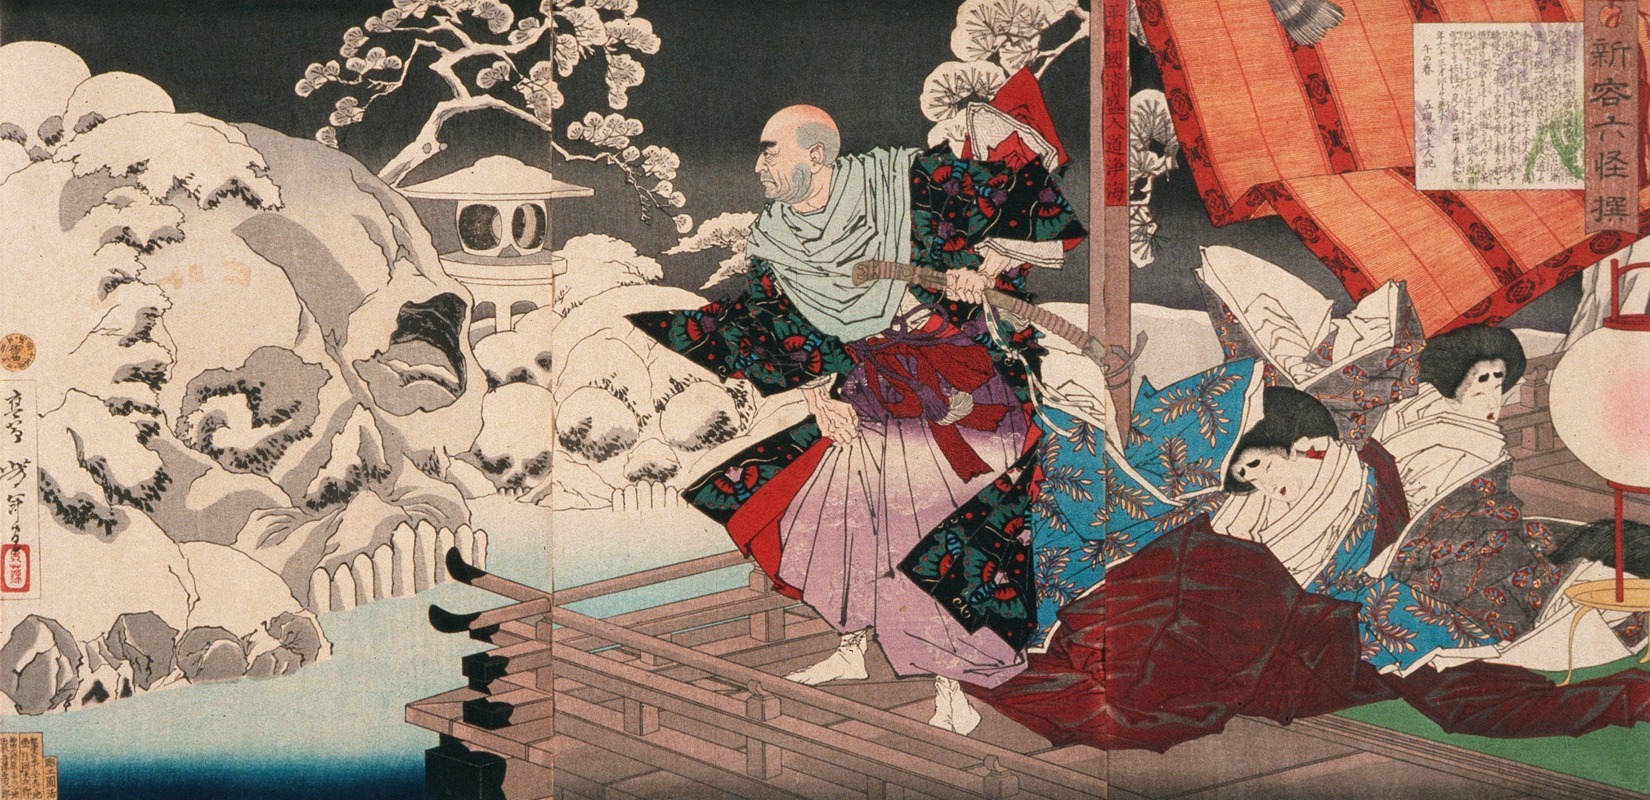 Tsukioka Yoshitoshi - A New Selection of Strange Events; Taira No Kiyomori Seeing Skulls in the Snowy Garden